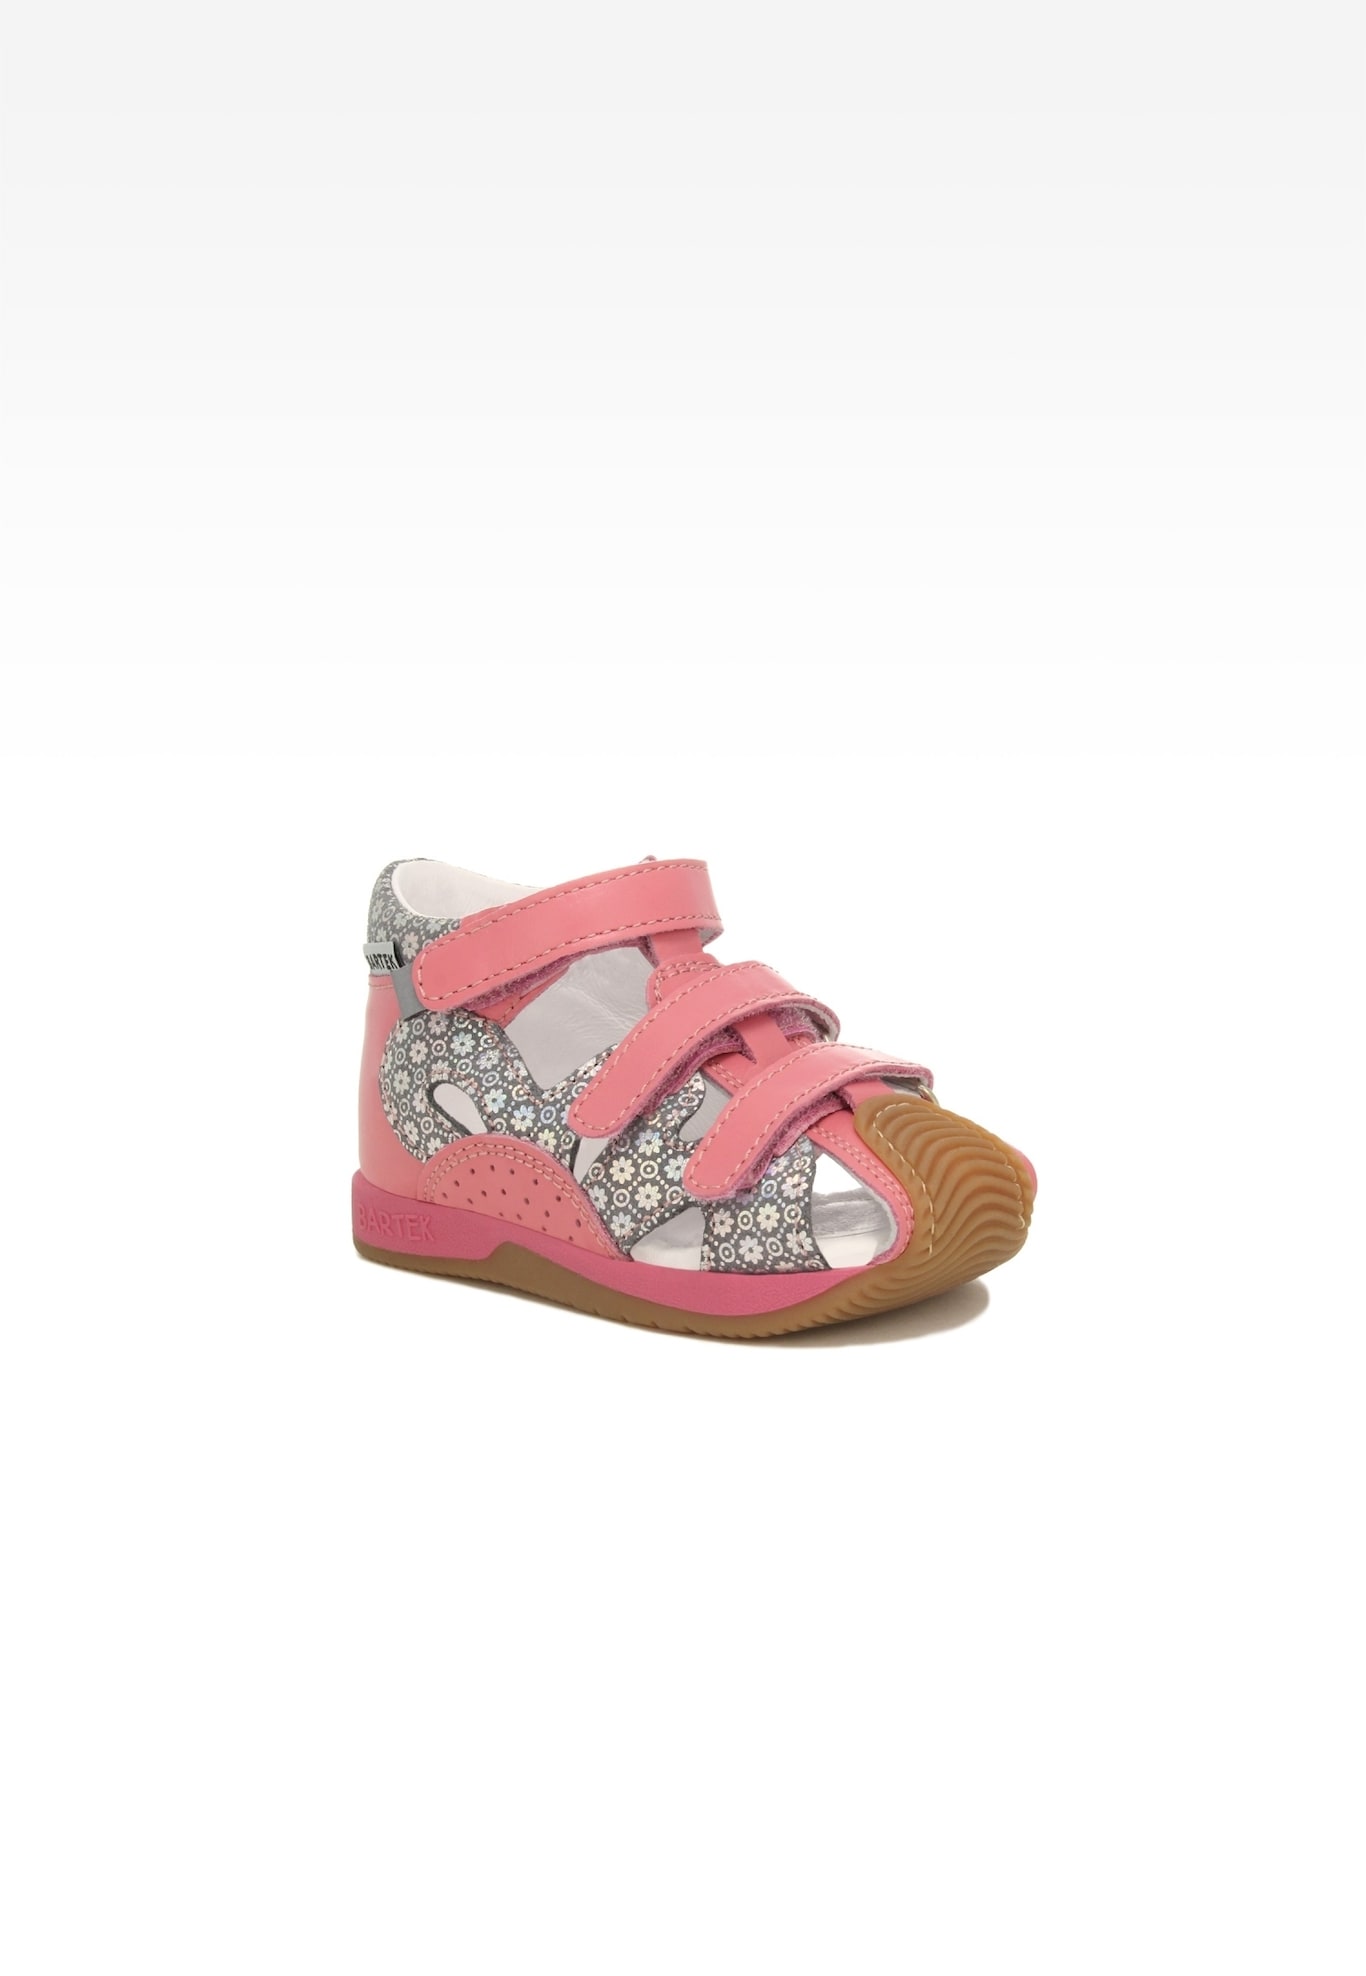 Sandały BARTEK 081021-008 II, dla dziewcząt, różowo-szary